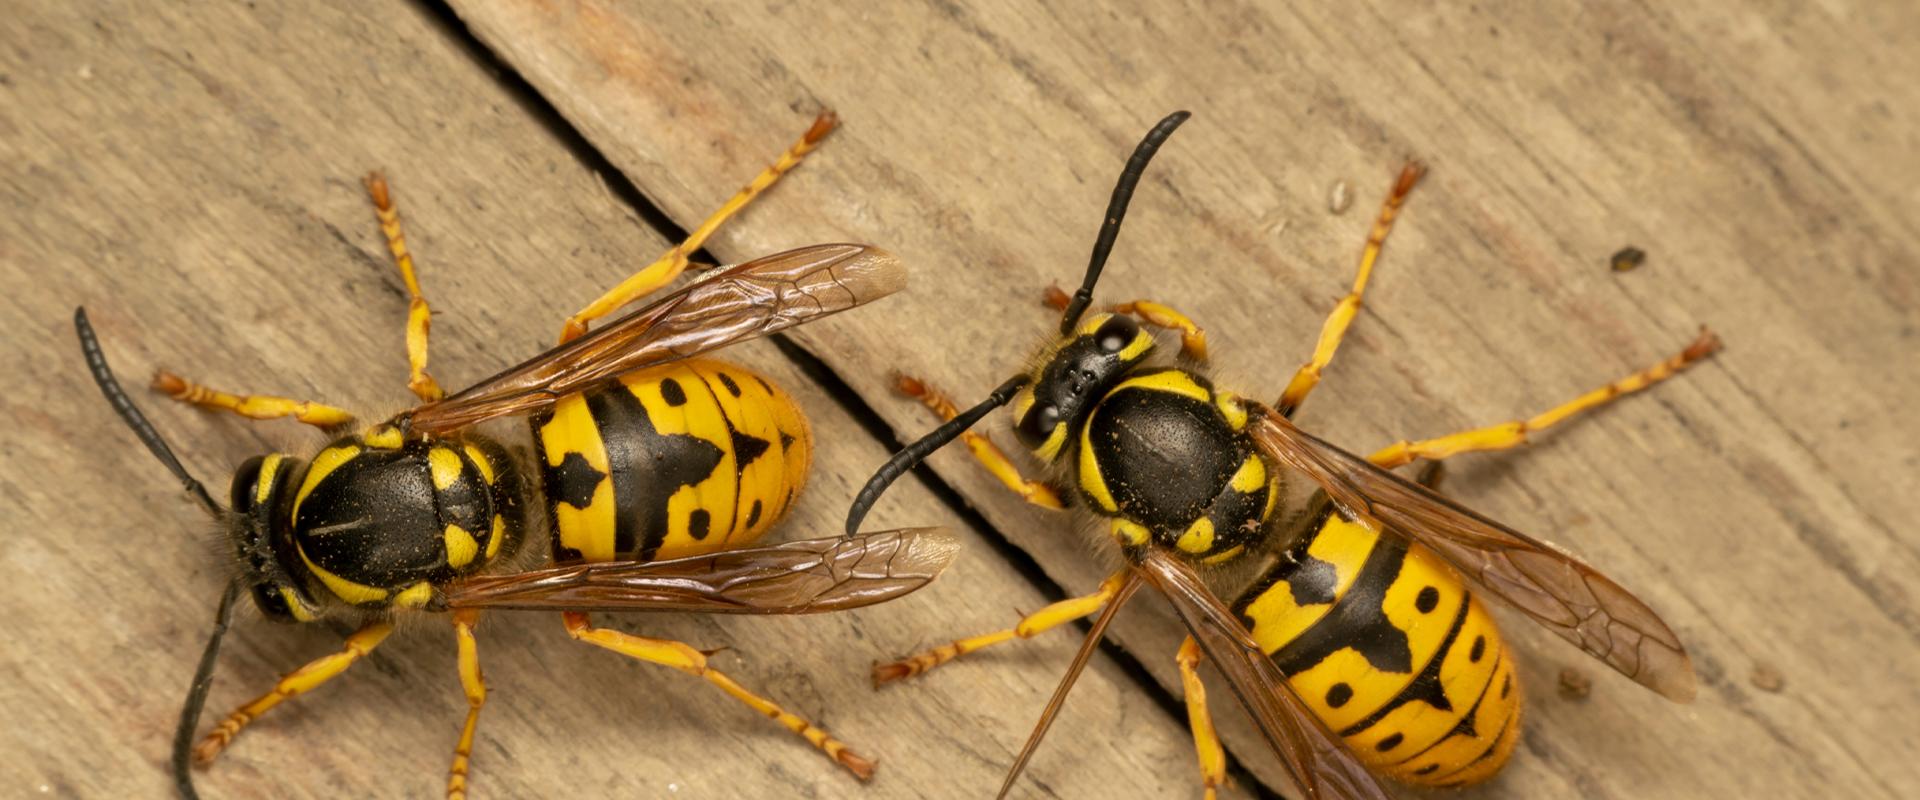 wasps on wood